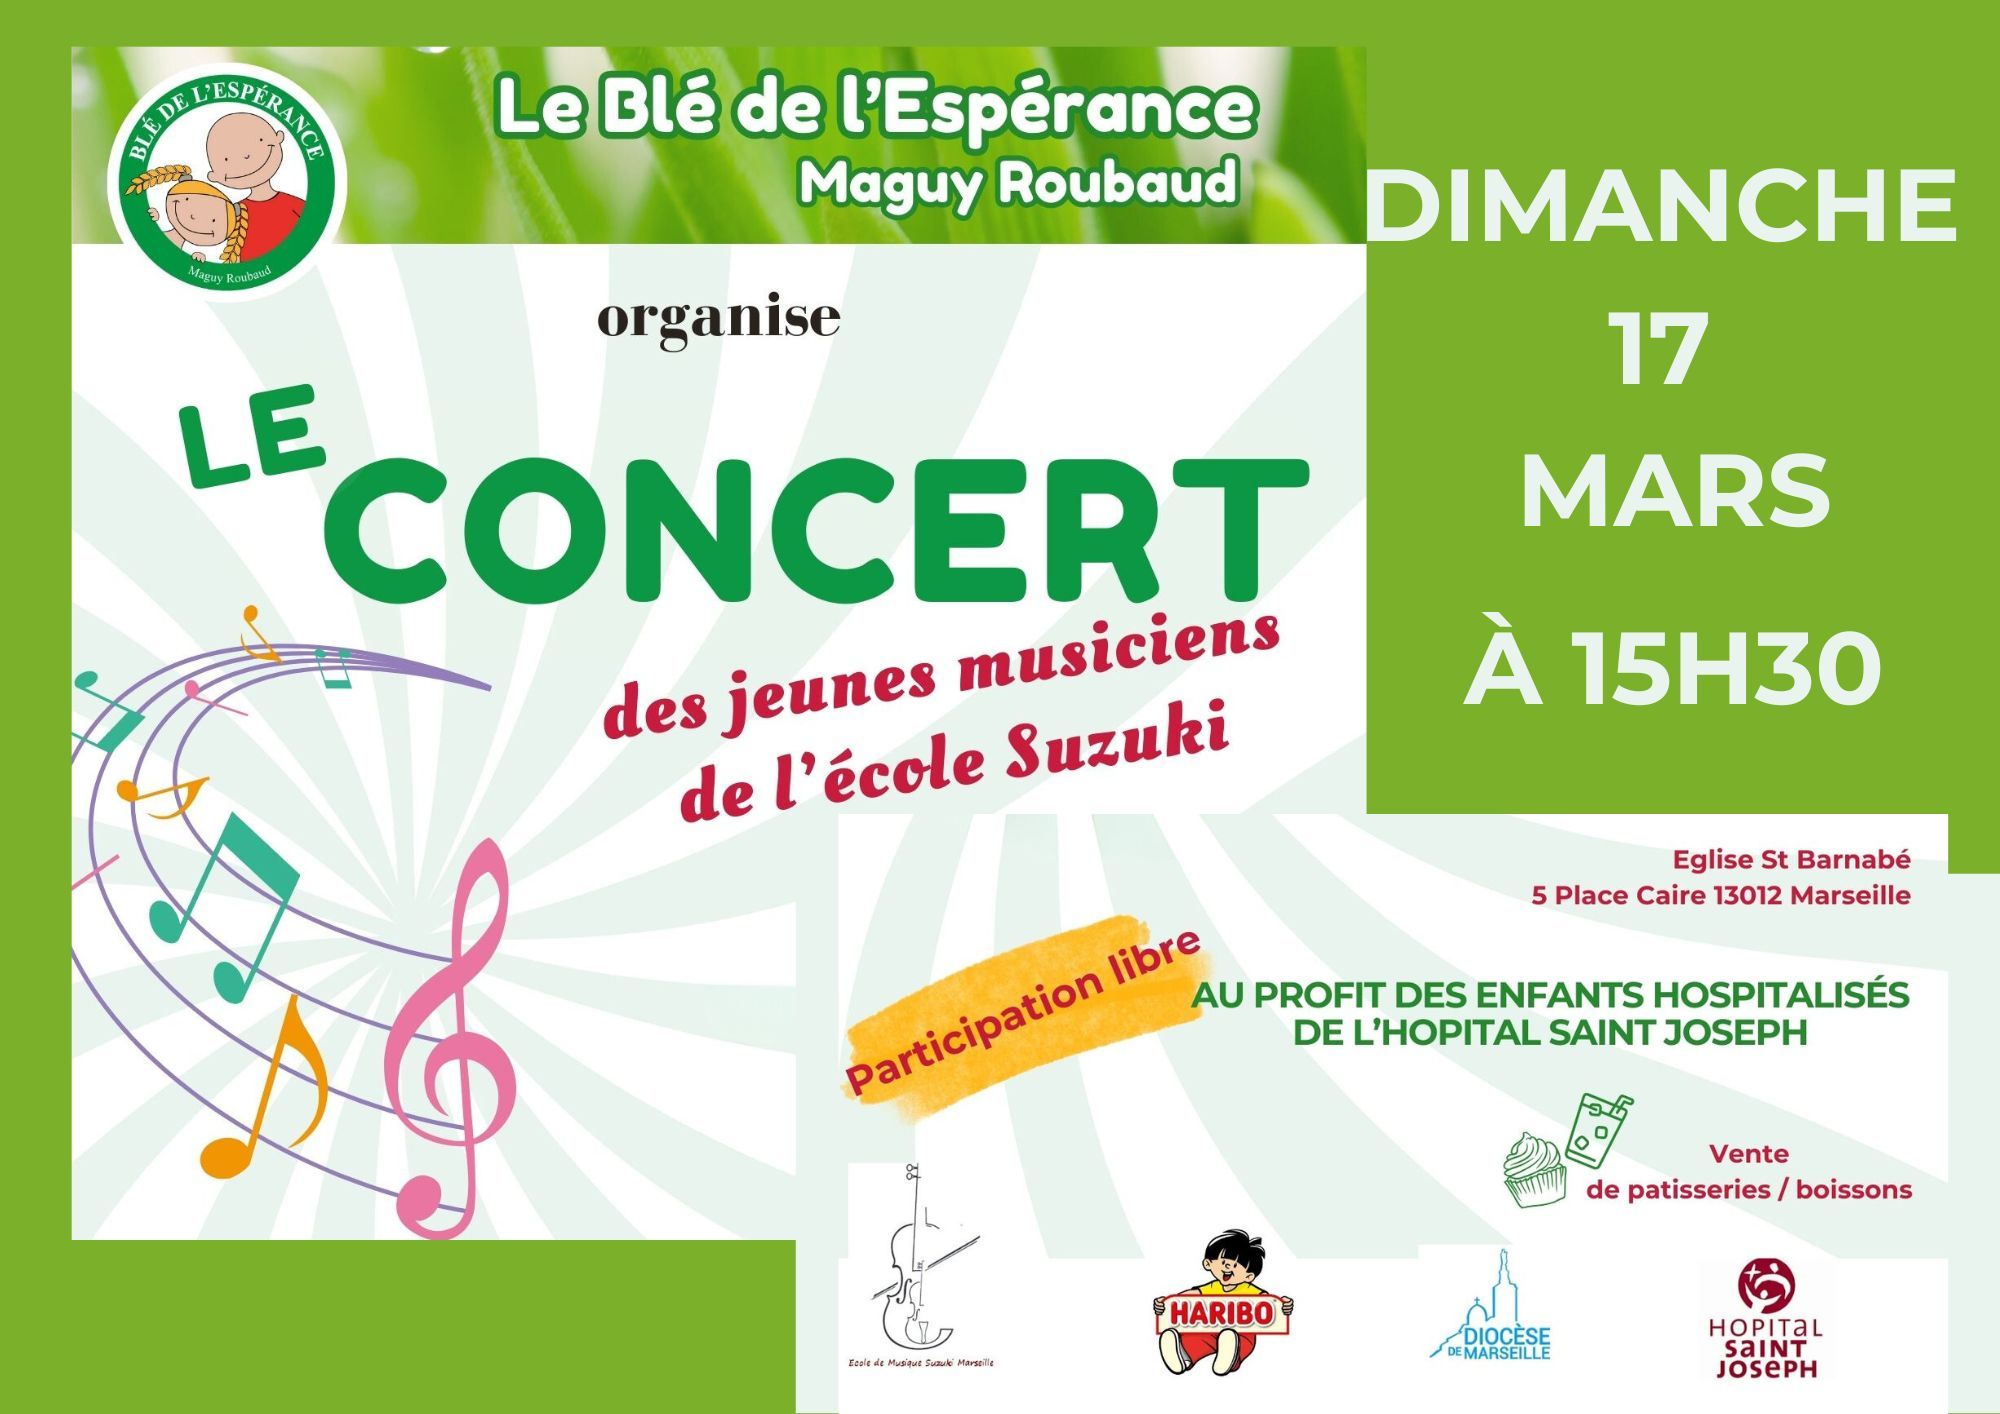 Dimanche 17 mars : Concert organisé par les Blés de L’Espérance au profit des enfants hospitalisés de l’Hôpital